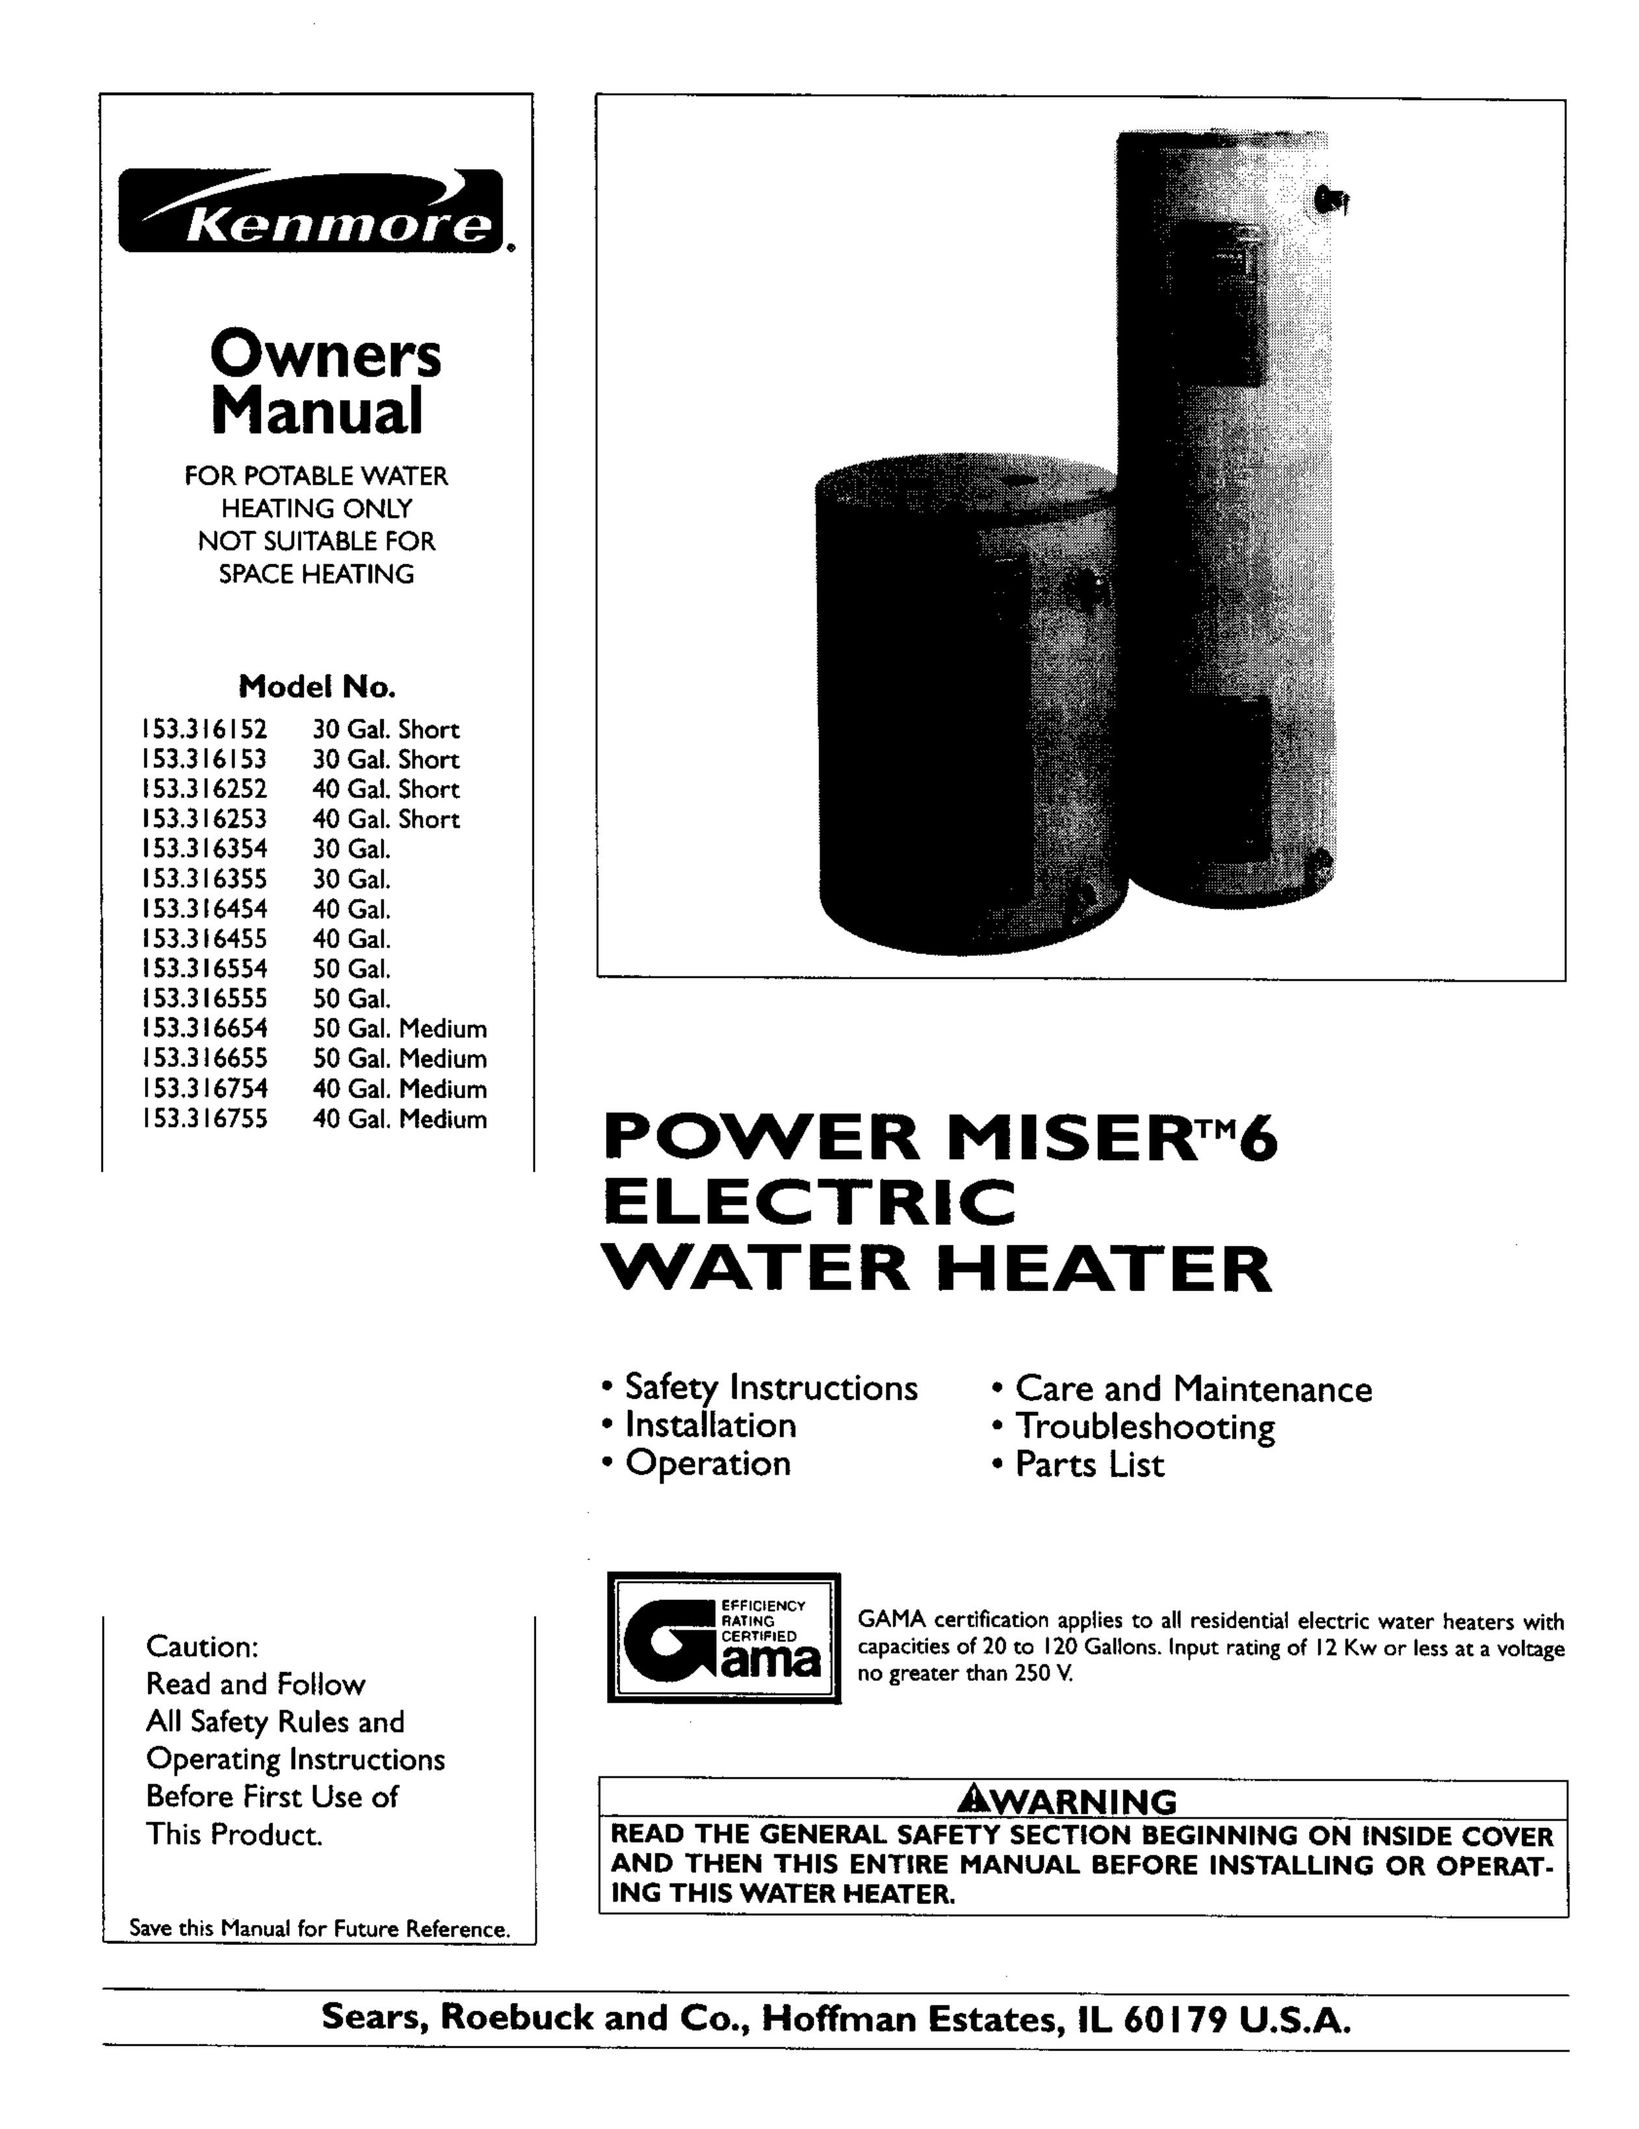 Kenmore 153.316355 Water Heater User Manual